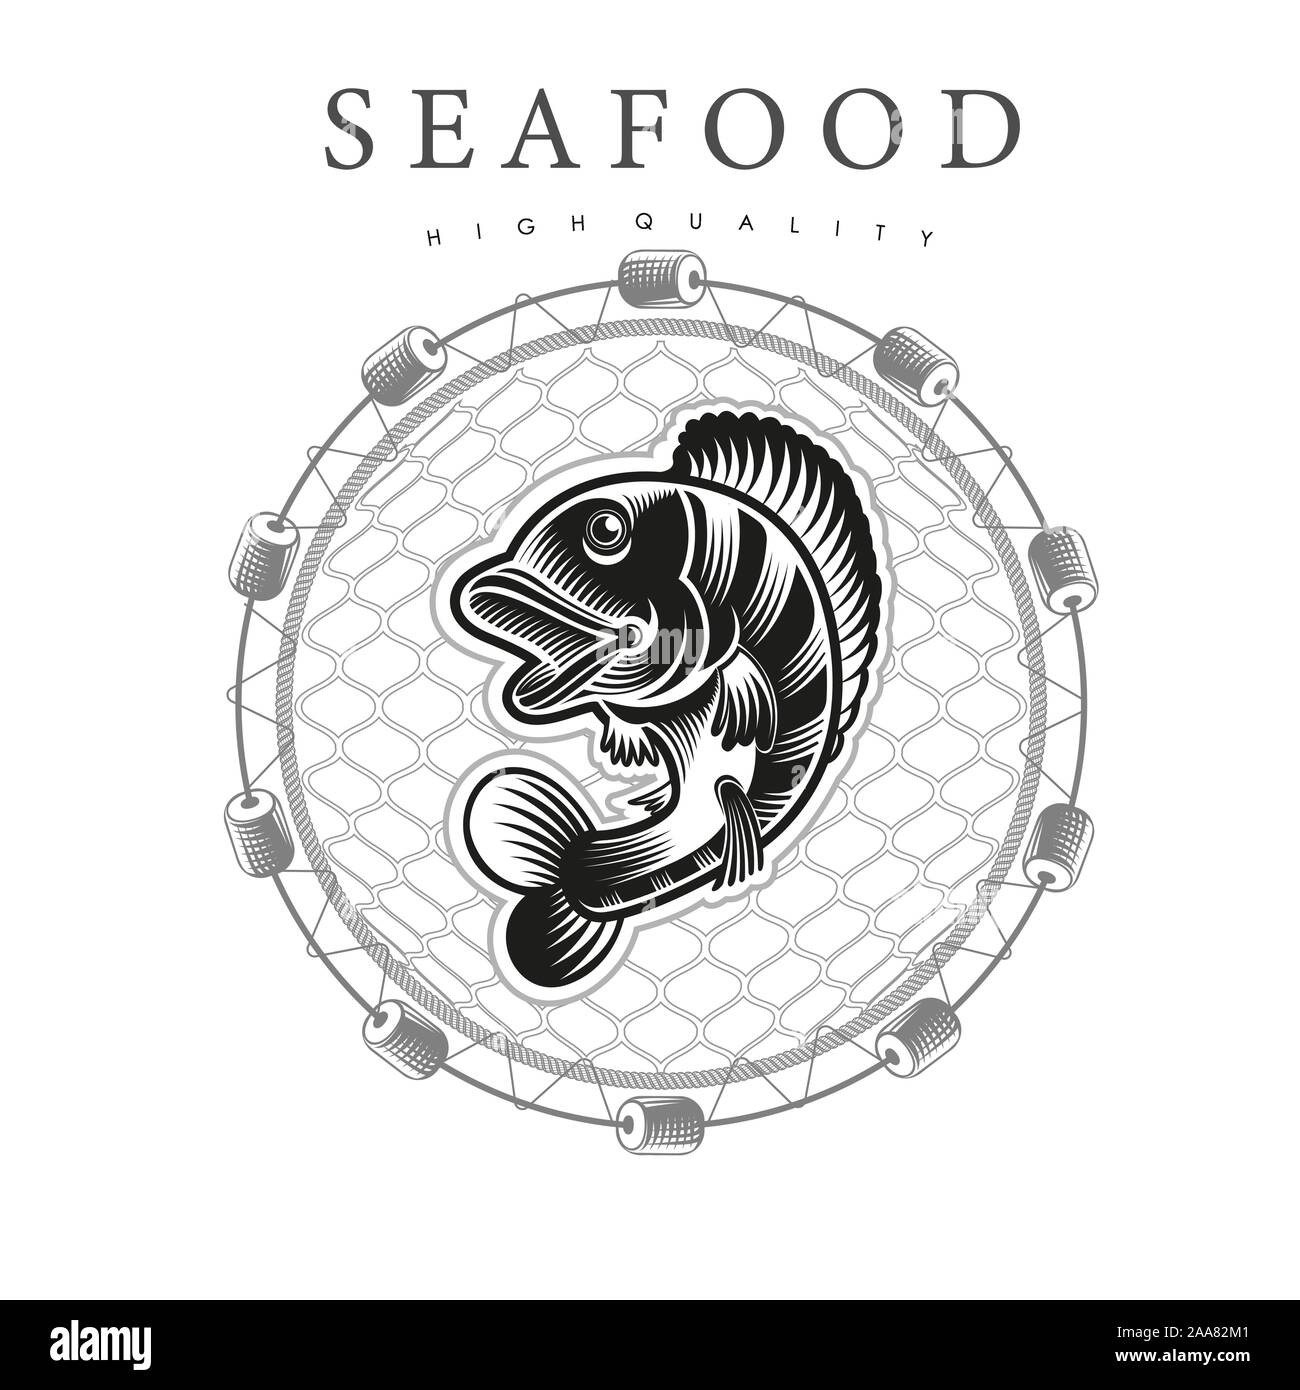 La perche en saut, dans le centre autour des filets de pêche sur fond blanc. Logo pour les produits du poisson ou des fruits de mer dans le style gravure sur bois Illustration de Vecteur